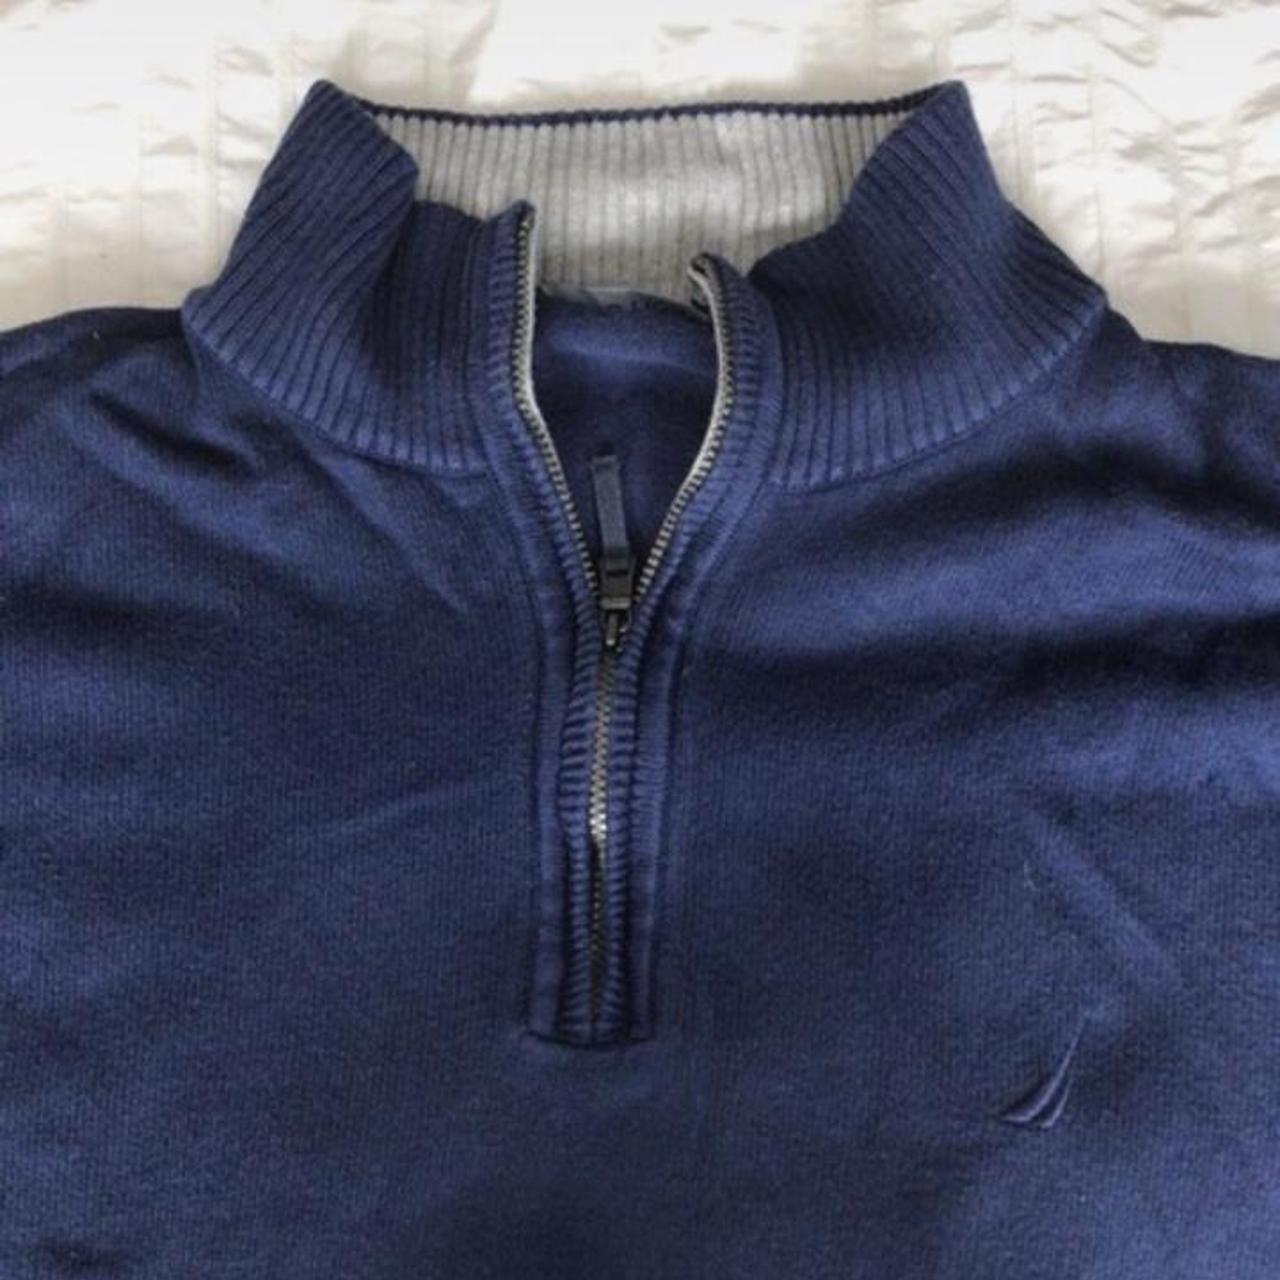 Men’s navy blue nautica quarter zip jumper Very... - Depop